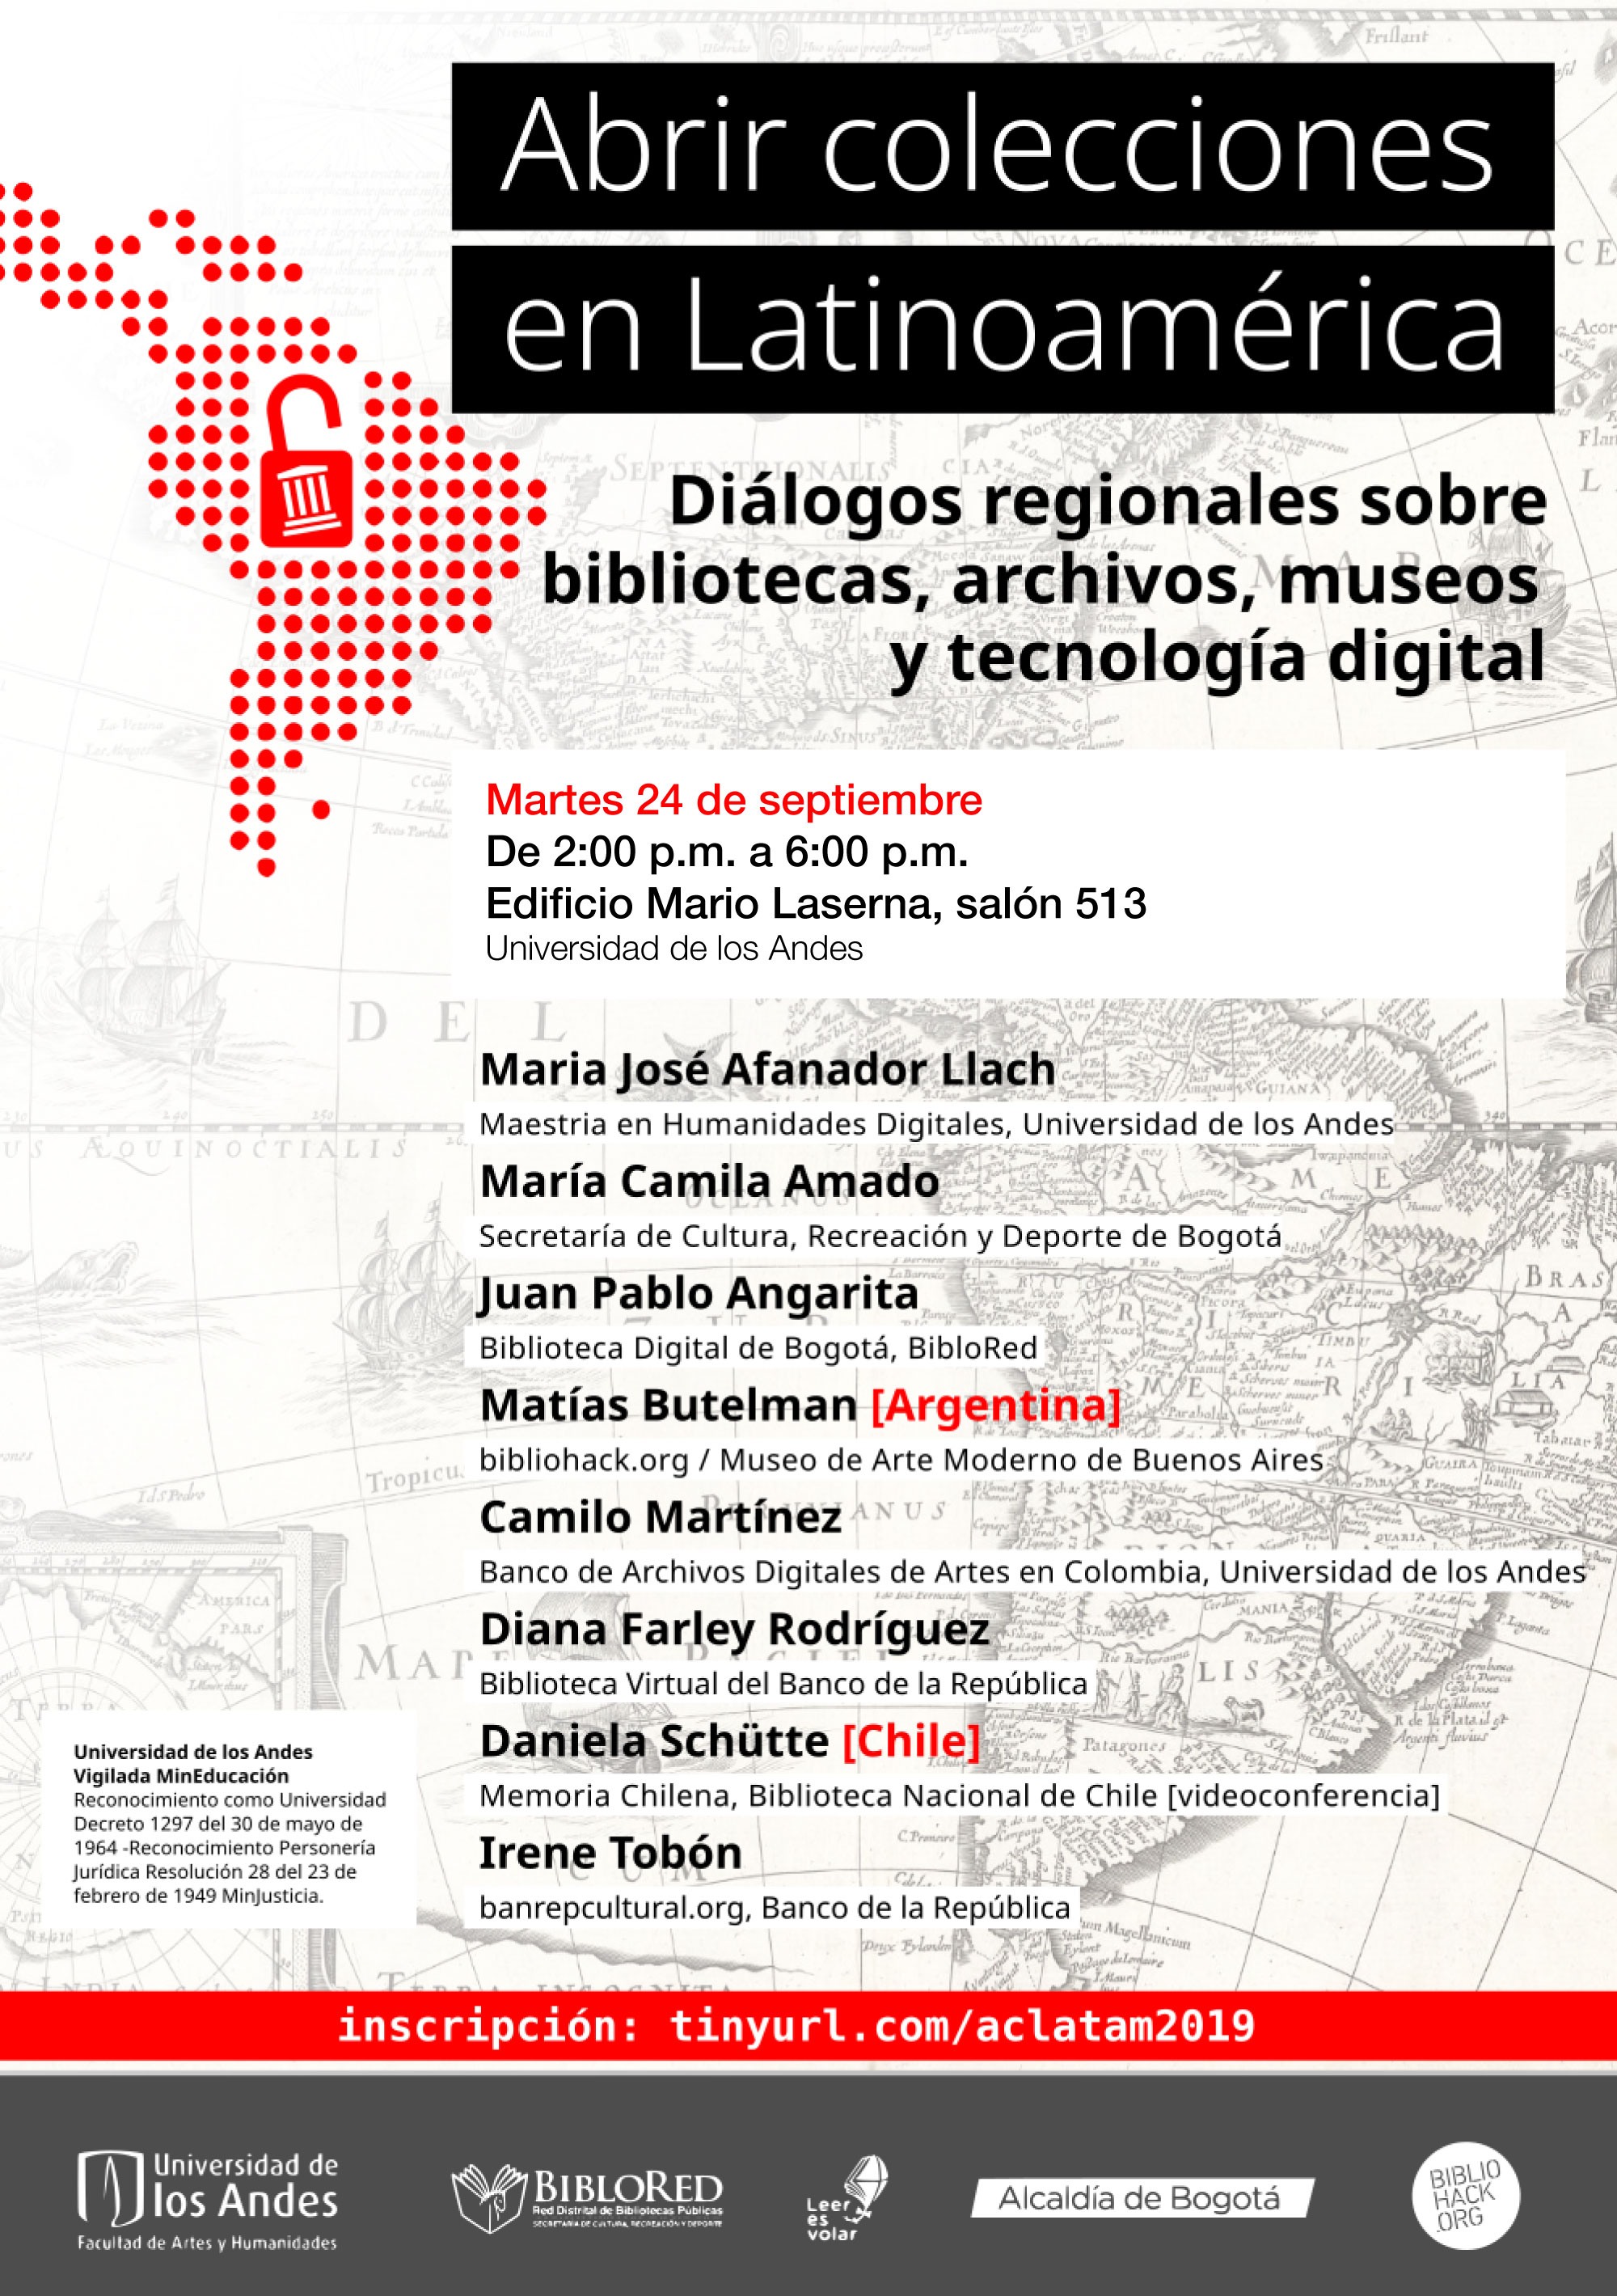 Abrir colecciones en Latinoamérica Diálogos regionales sobre bibliotecas, archivos, museos y tecnología digital